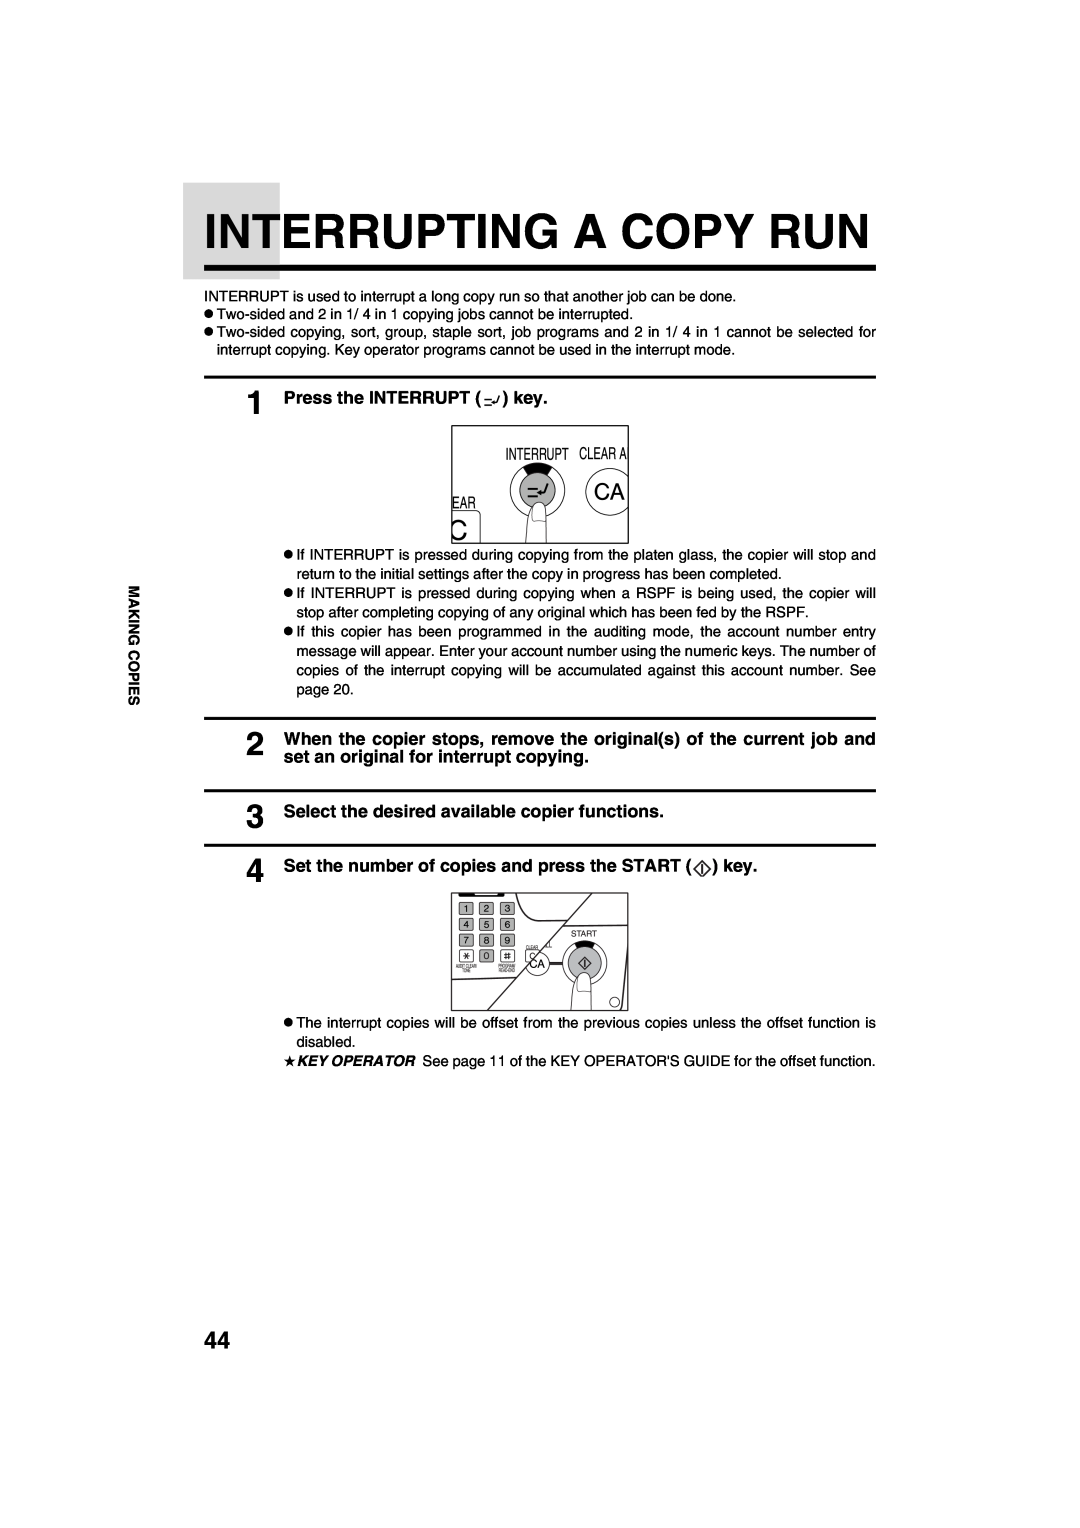 Sharp AR-M208 operation manual Interrupting A Copy Run, Press the INTERRUPT key, set an original for interrupt copying 